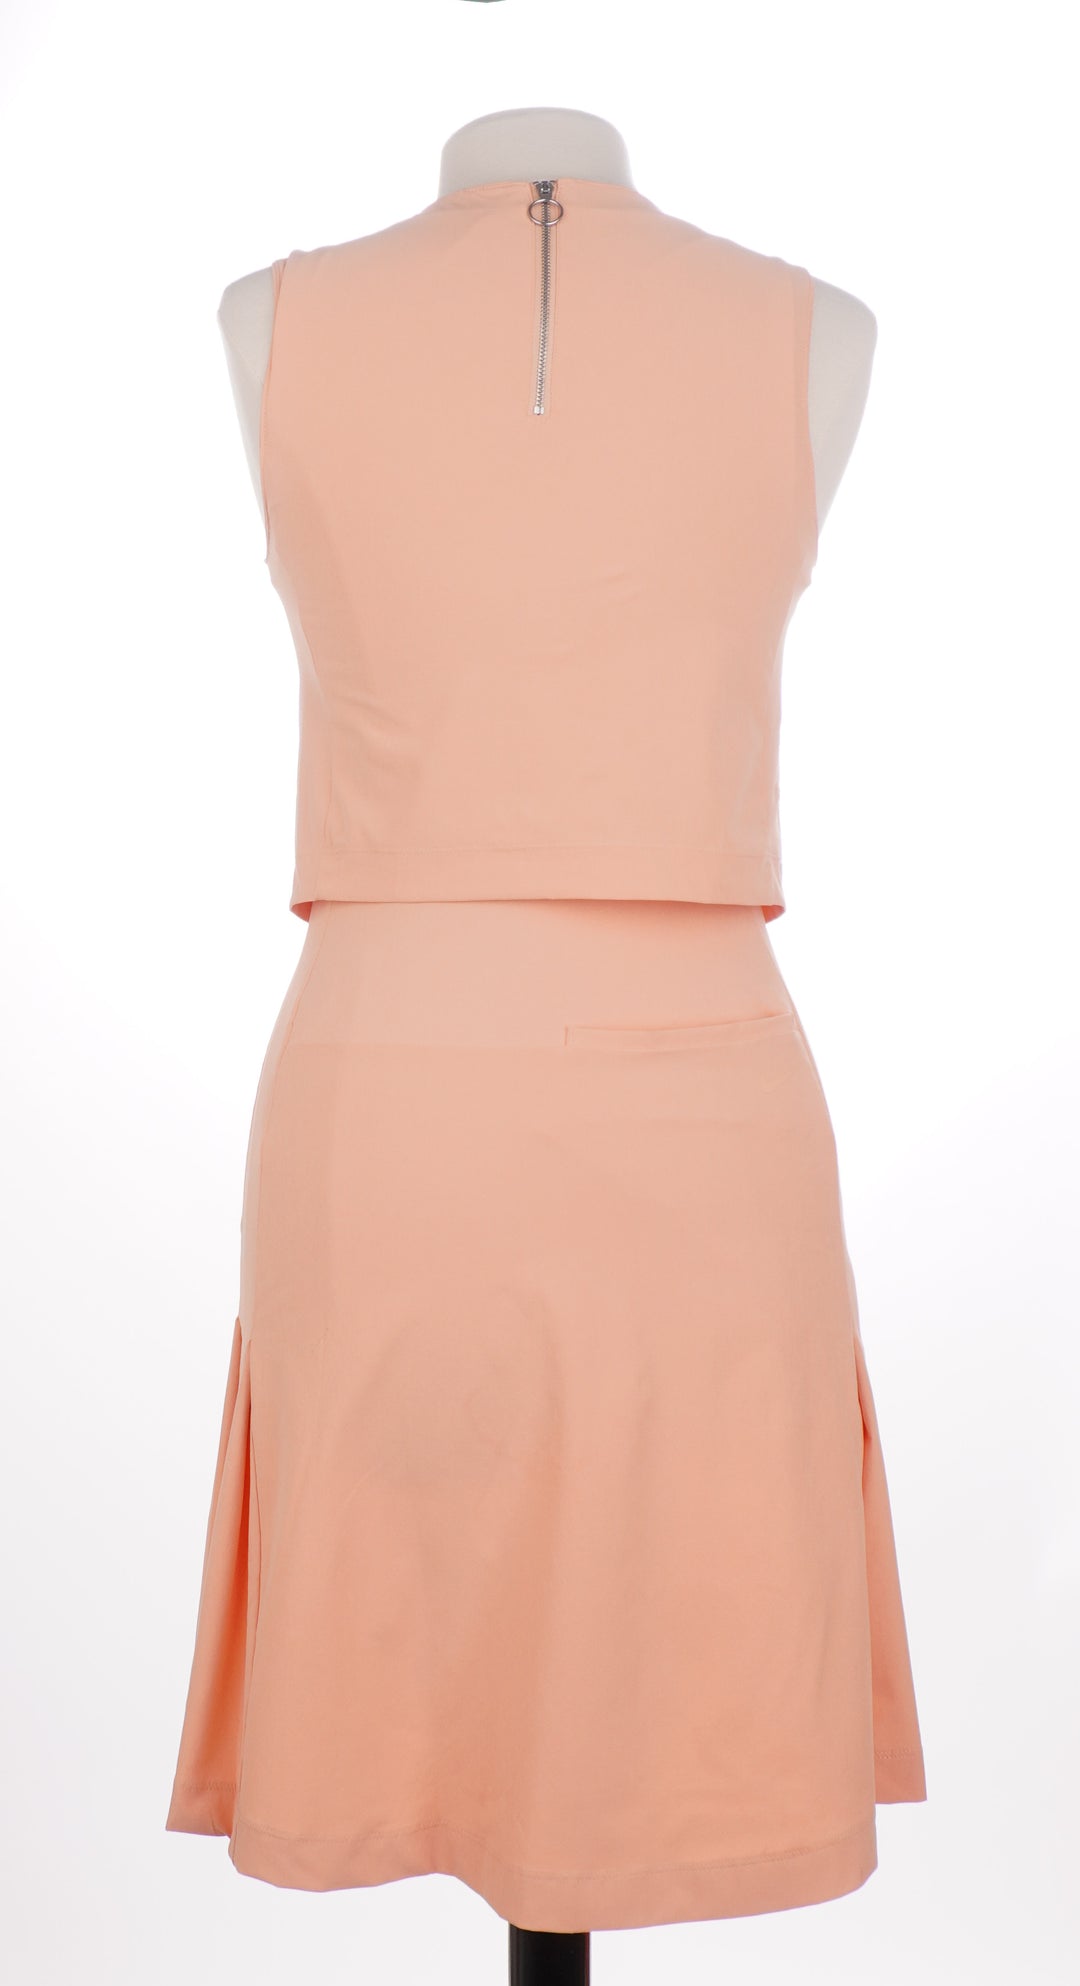 Nike Golf Sleeveless Apricot Golf Dress - Size X-Small - Skorzie